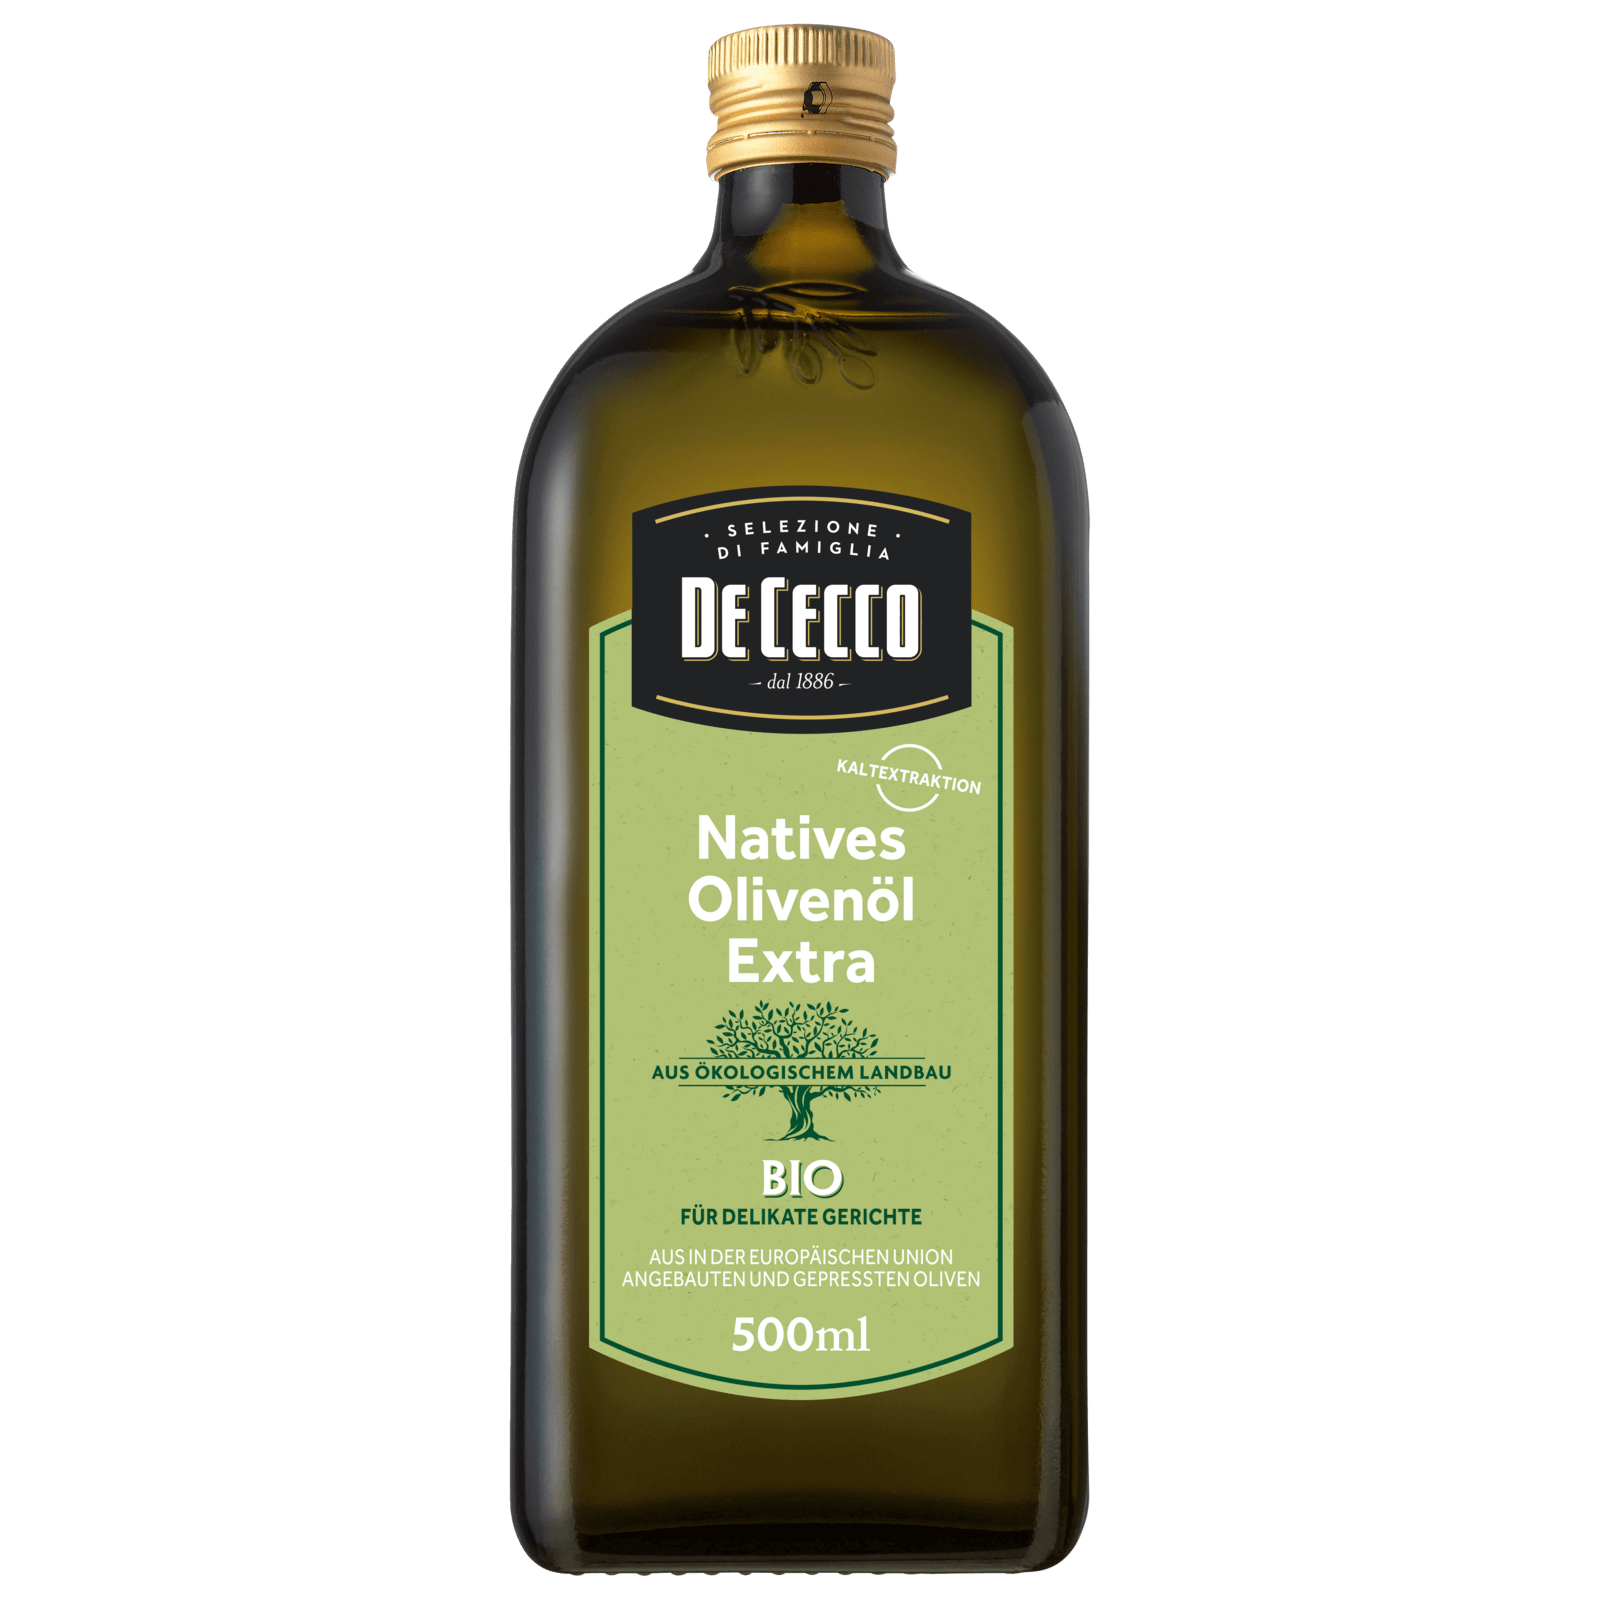 De Cecco Bio Natives Olivenöl Extra 500ml